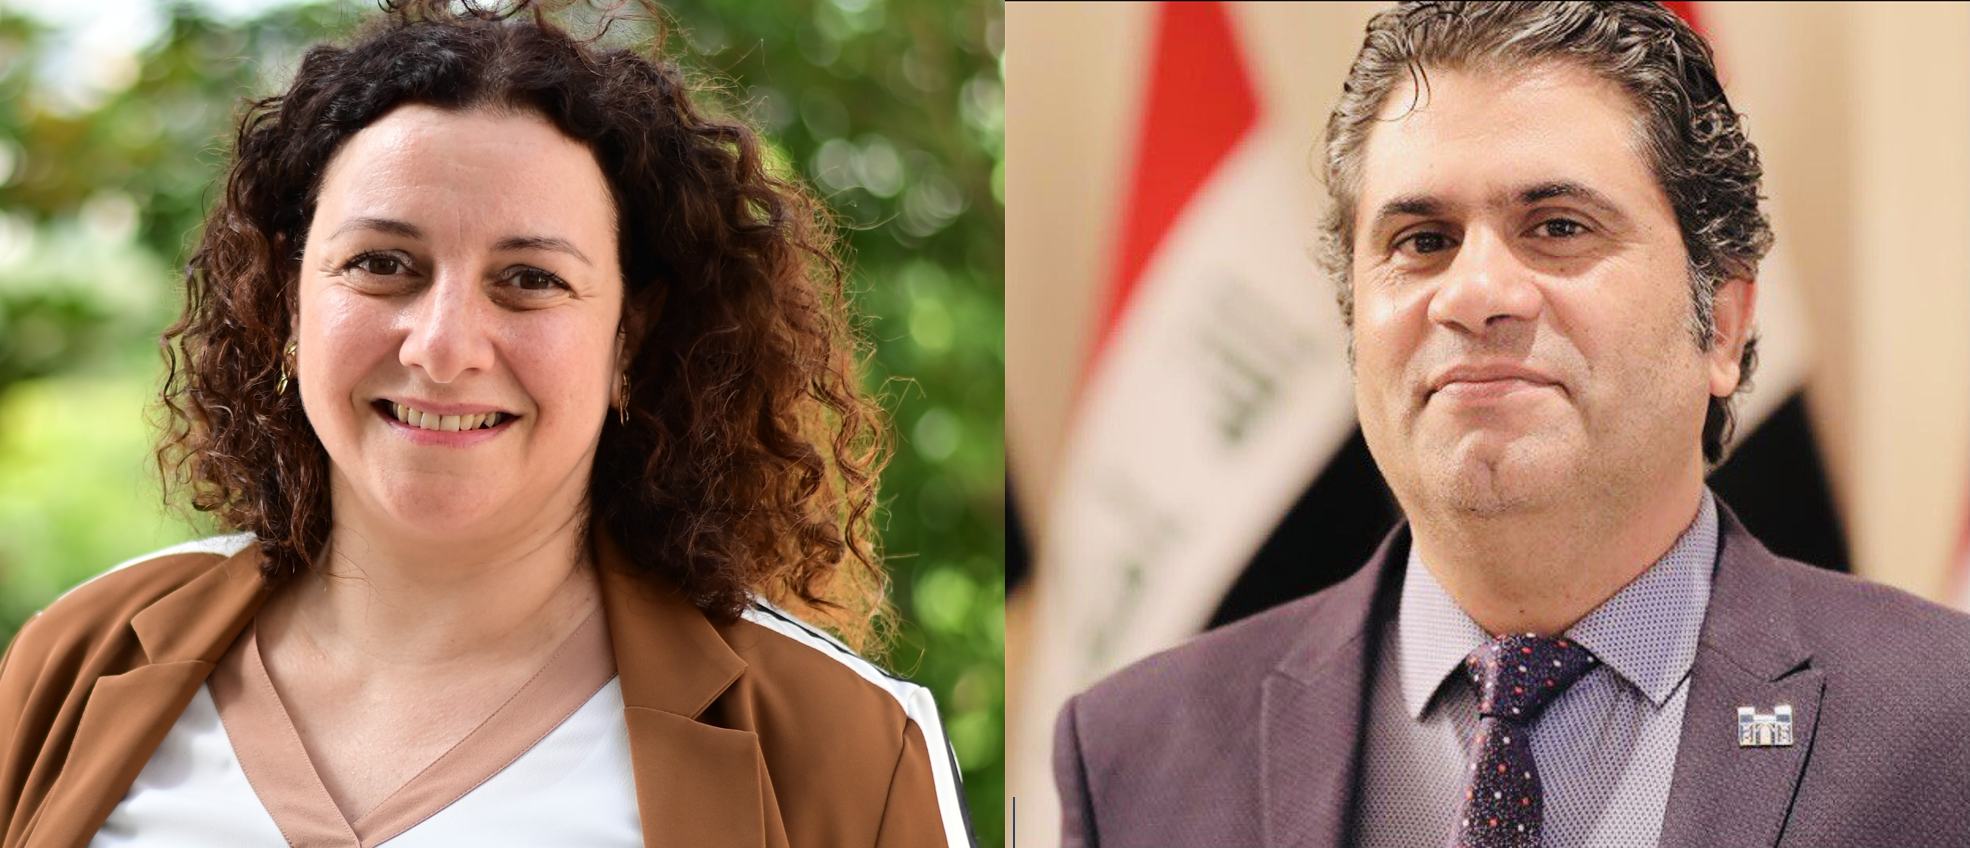 Prix Ibn Rushd 2022 – Liberté de religion : Remporté conjointement par Nayla Tabbara du Liban et Saad Salloum d’Irak